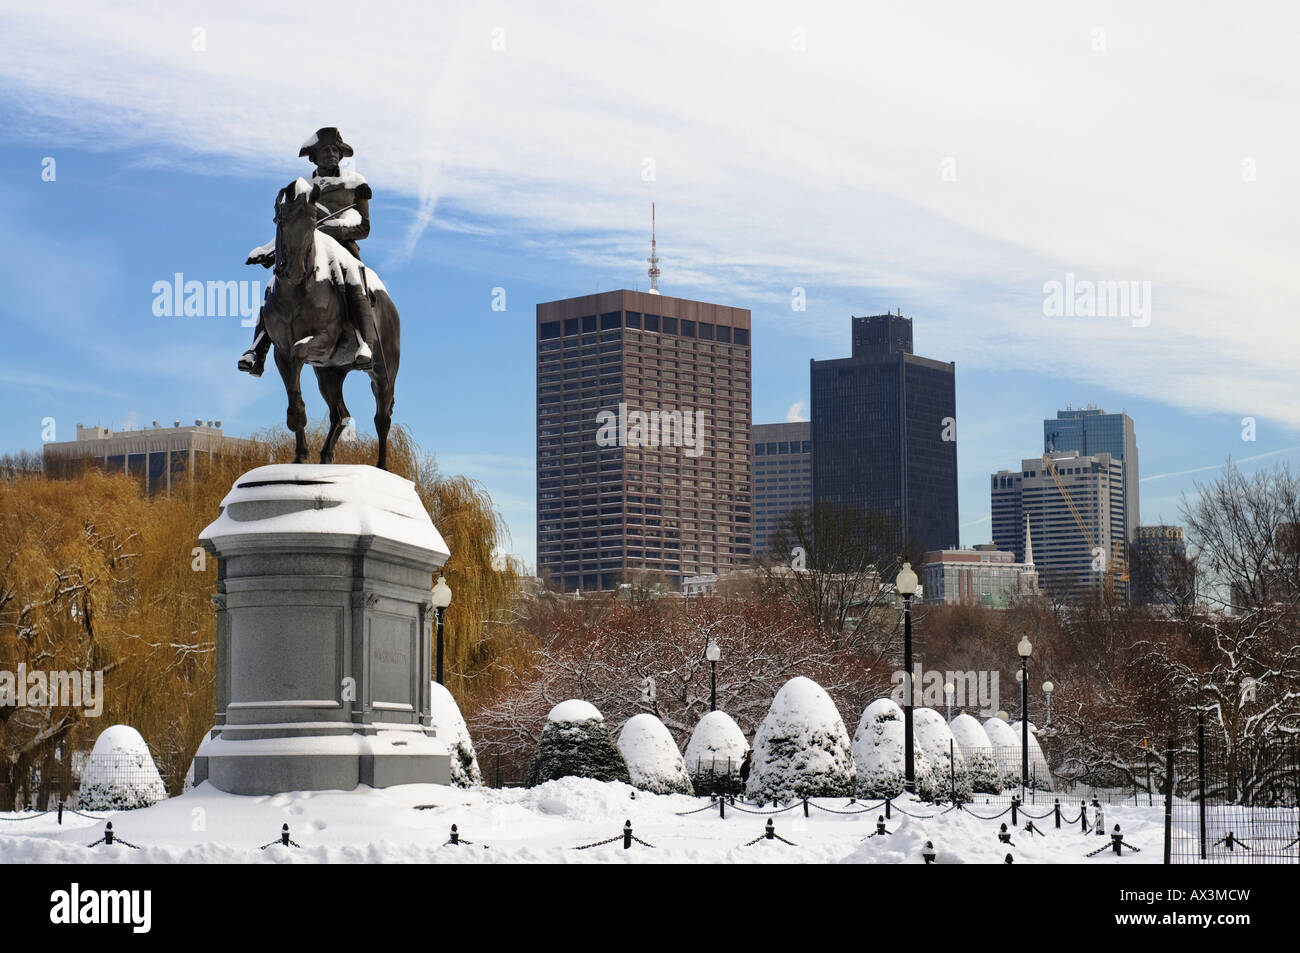 Sculpture de George Washington dans le jardin public de Boston MA. Après une neige fraîche. Banque D'Images